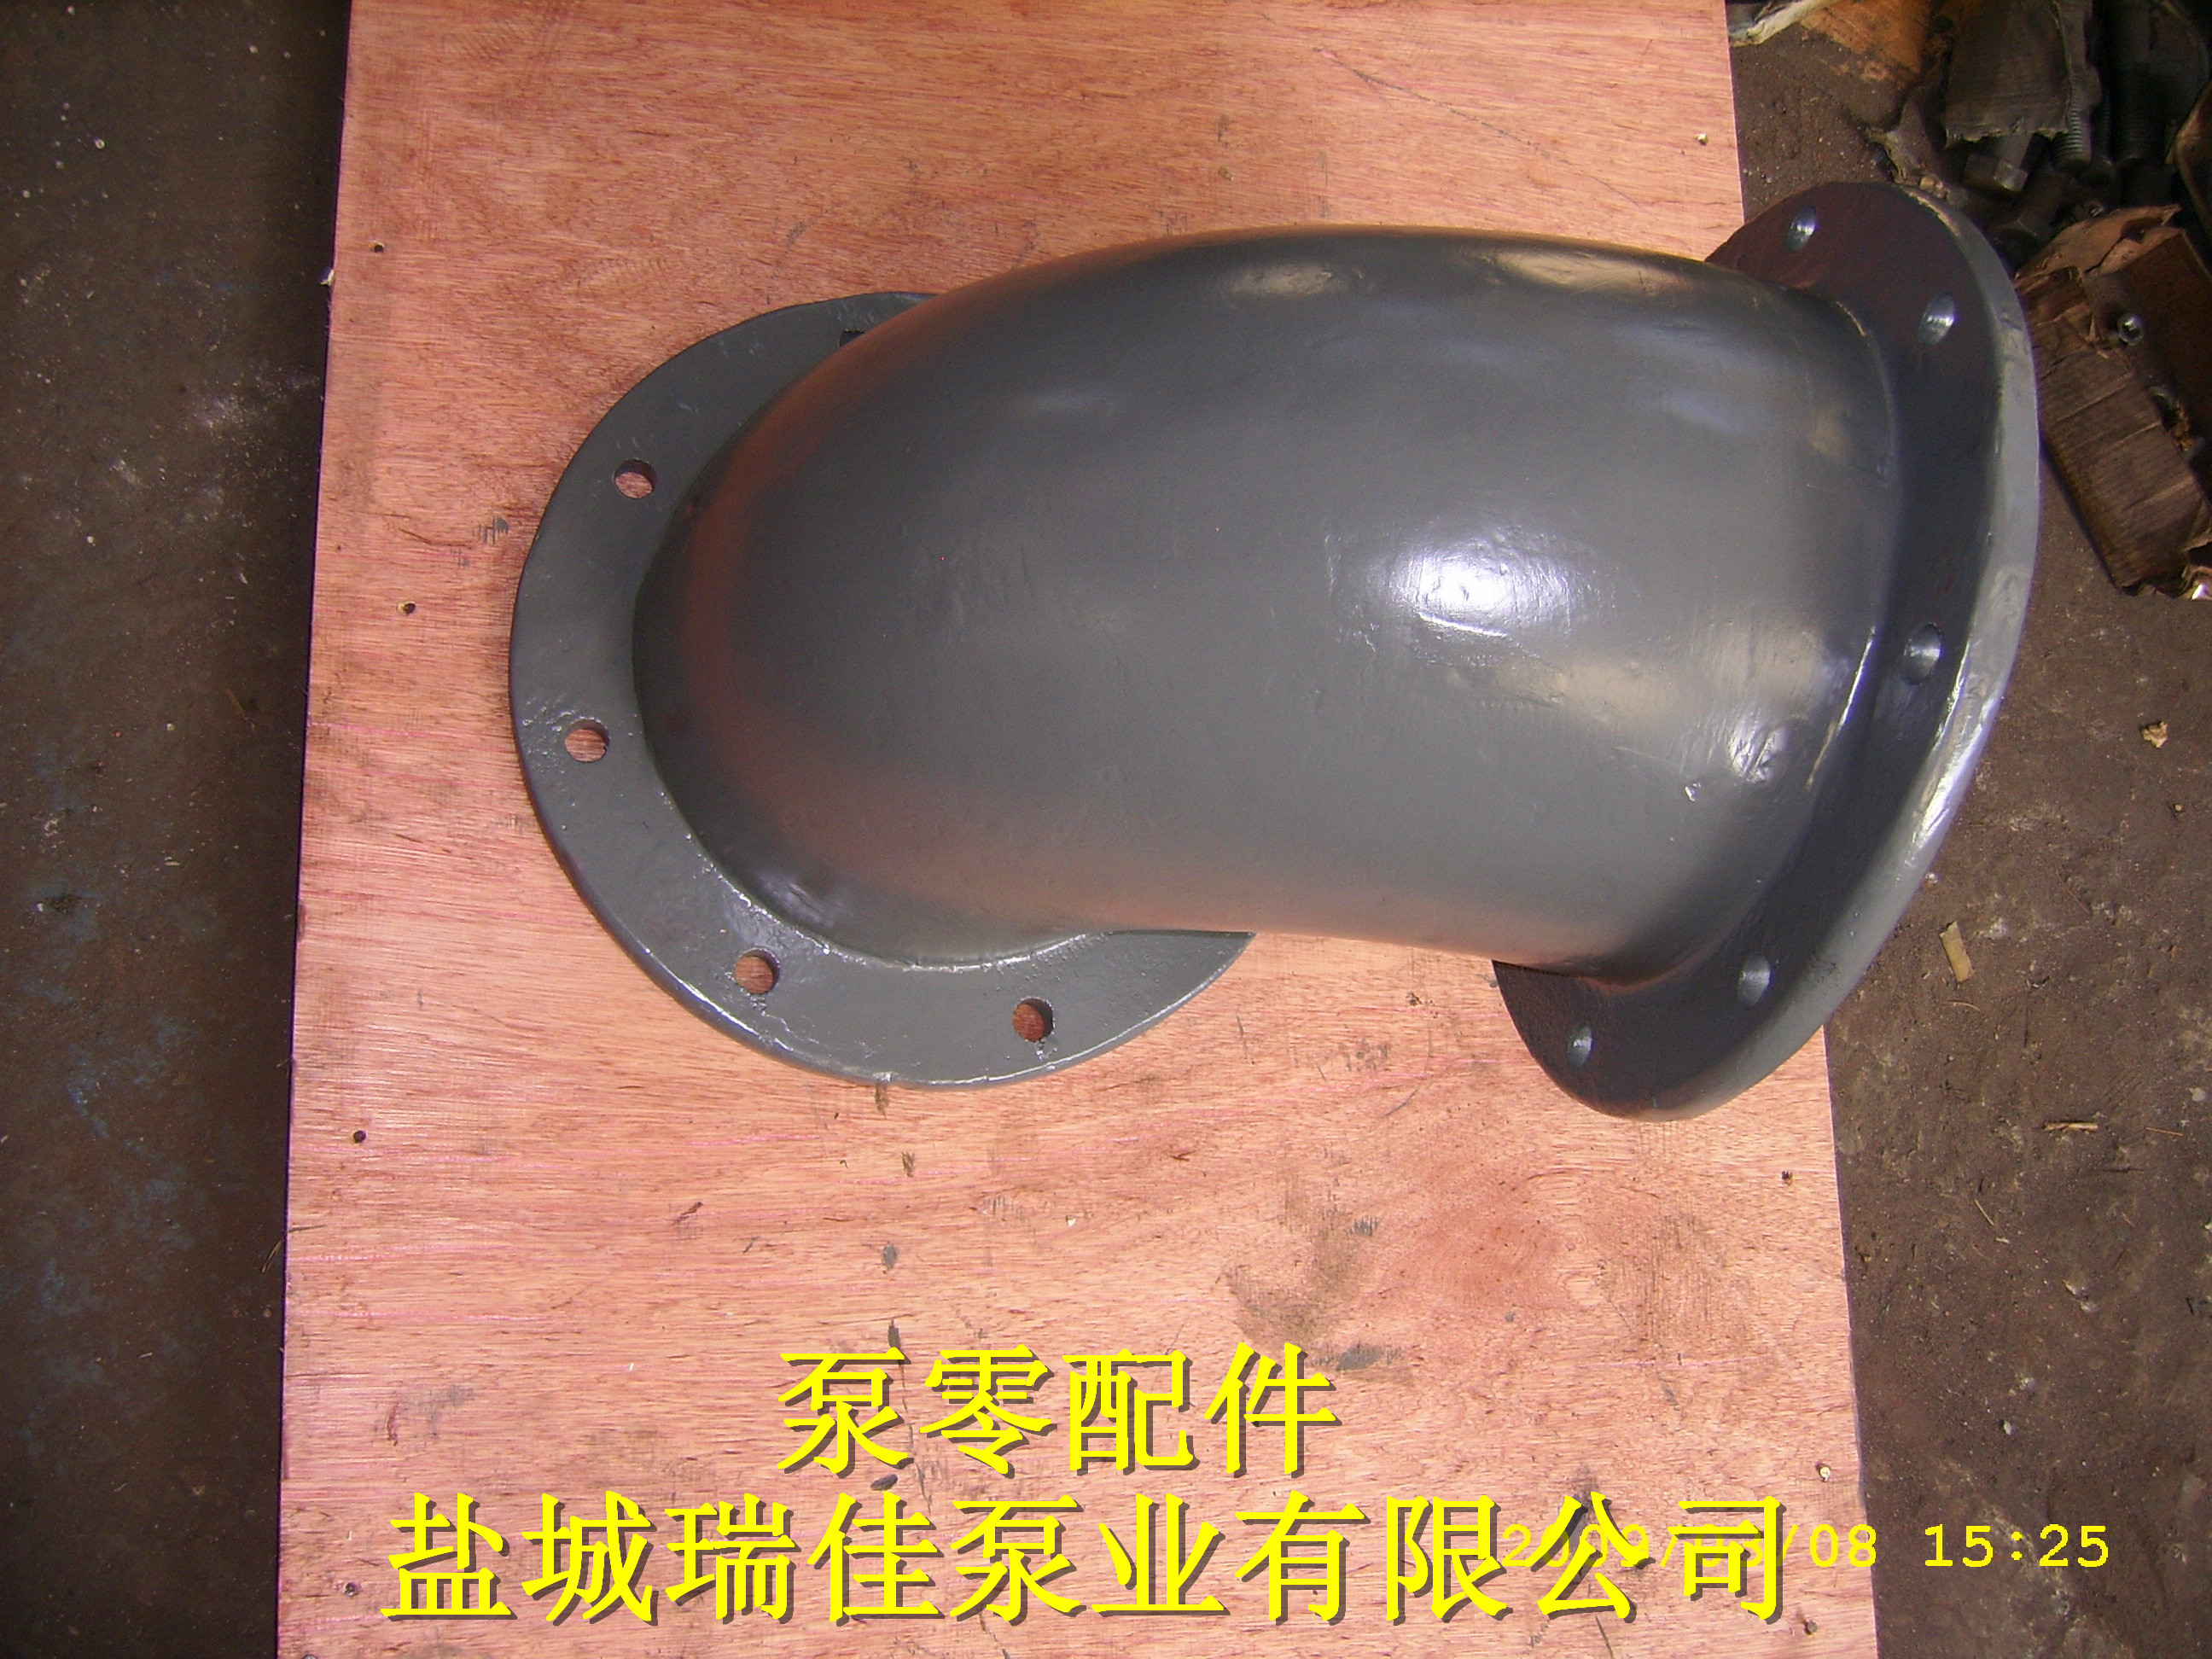 供应用于管路的铸铁管 铸铁管 水泵管 混流泵铸铁管 轴流泵铸铁管  泵用管 排水管 江苏铸铁管厂